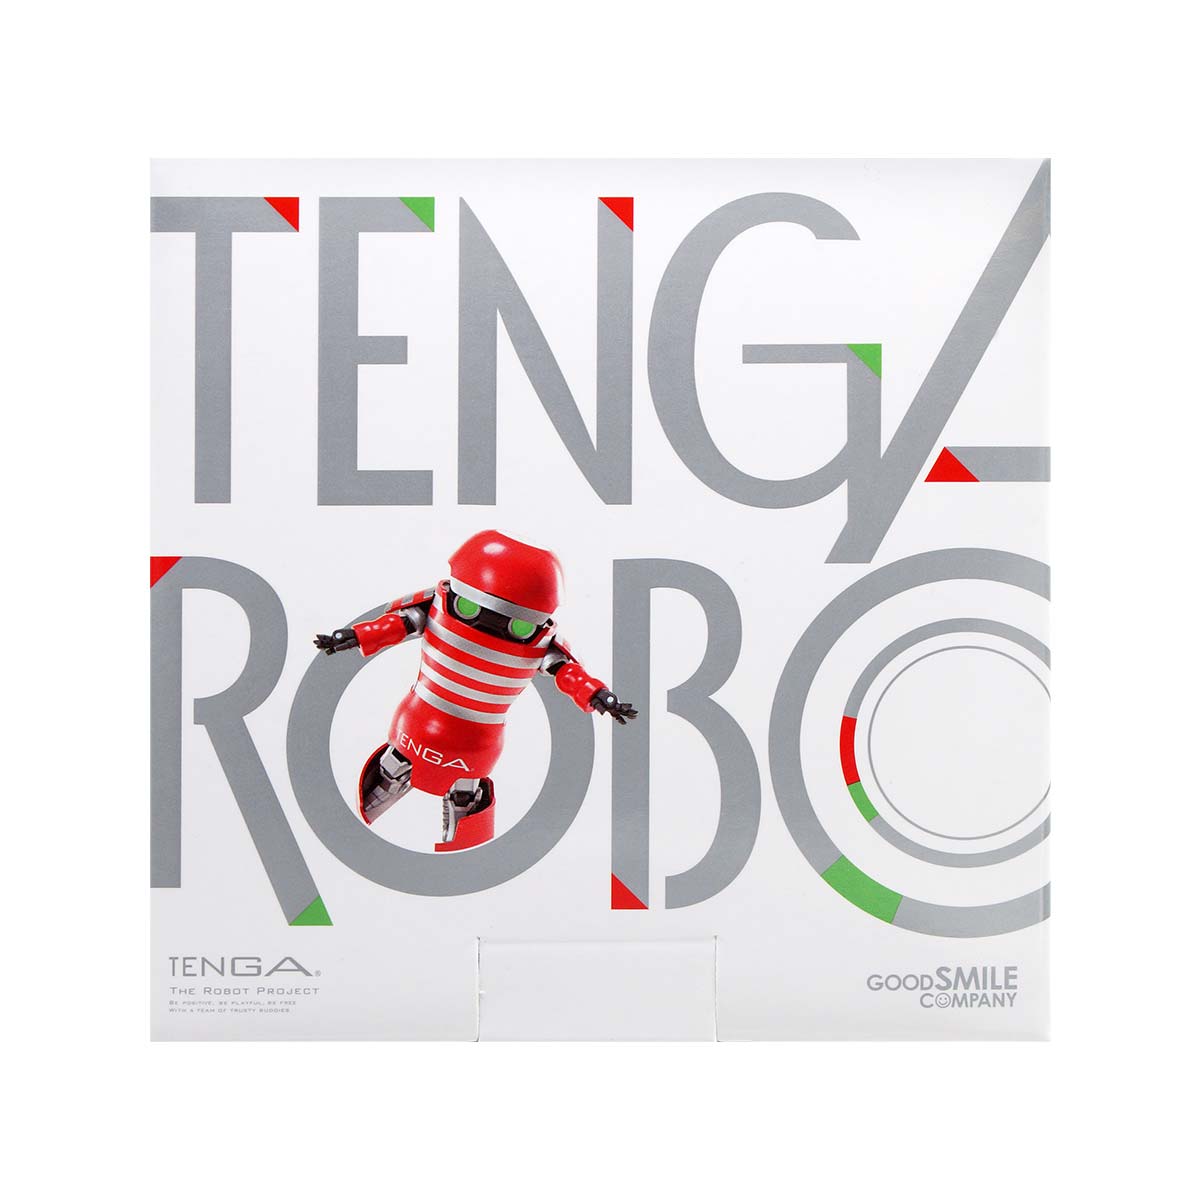 TENGA ROBO-thumb_2